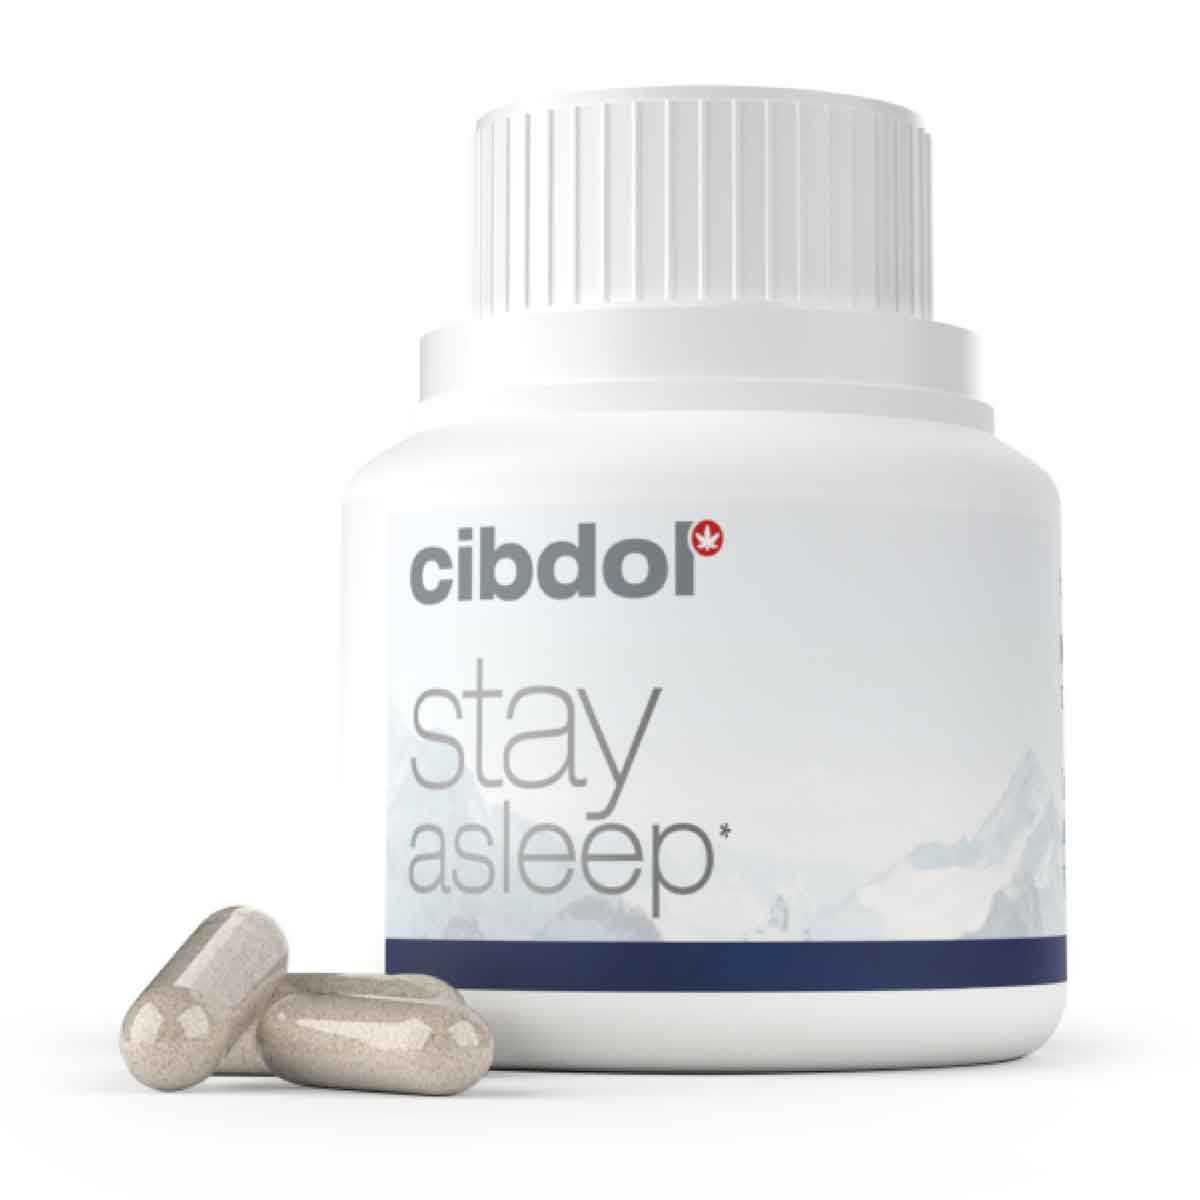 En flaske Cibdol Stay Asleep Kapsler med CBD og CBN (30 stk.) ved siden af.